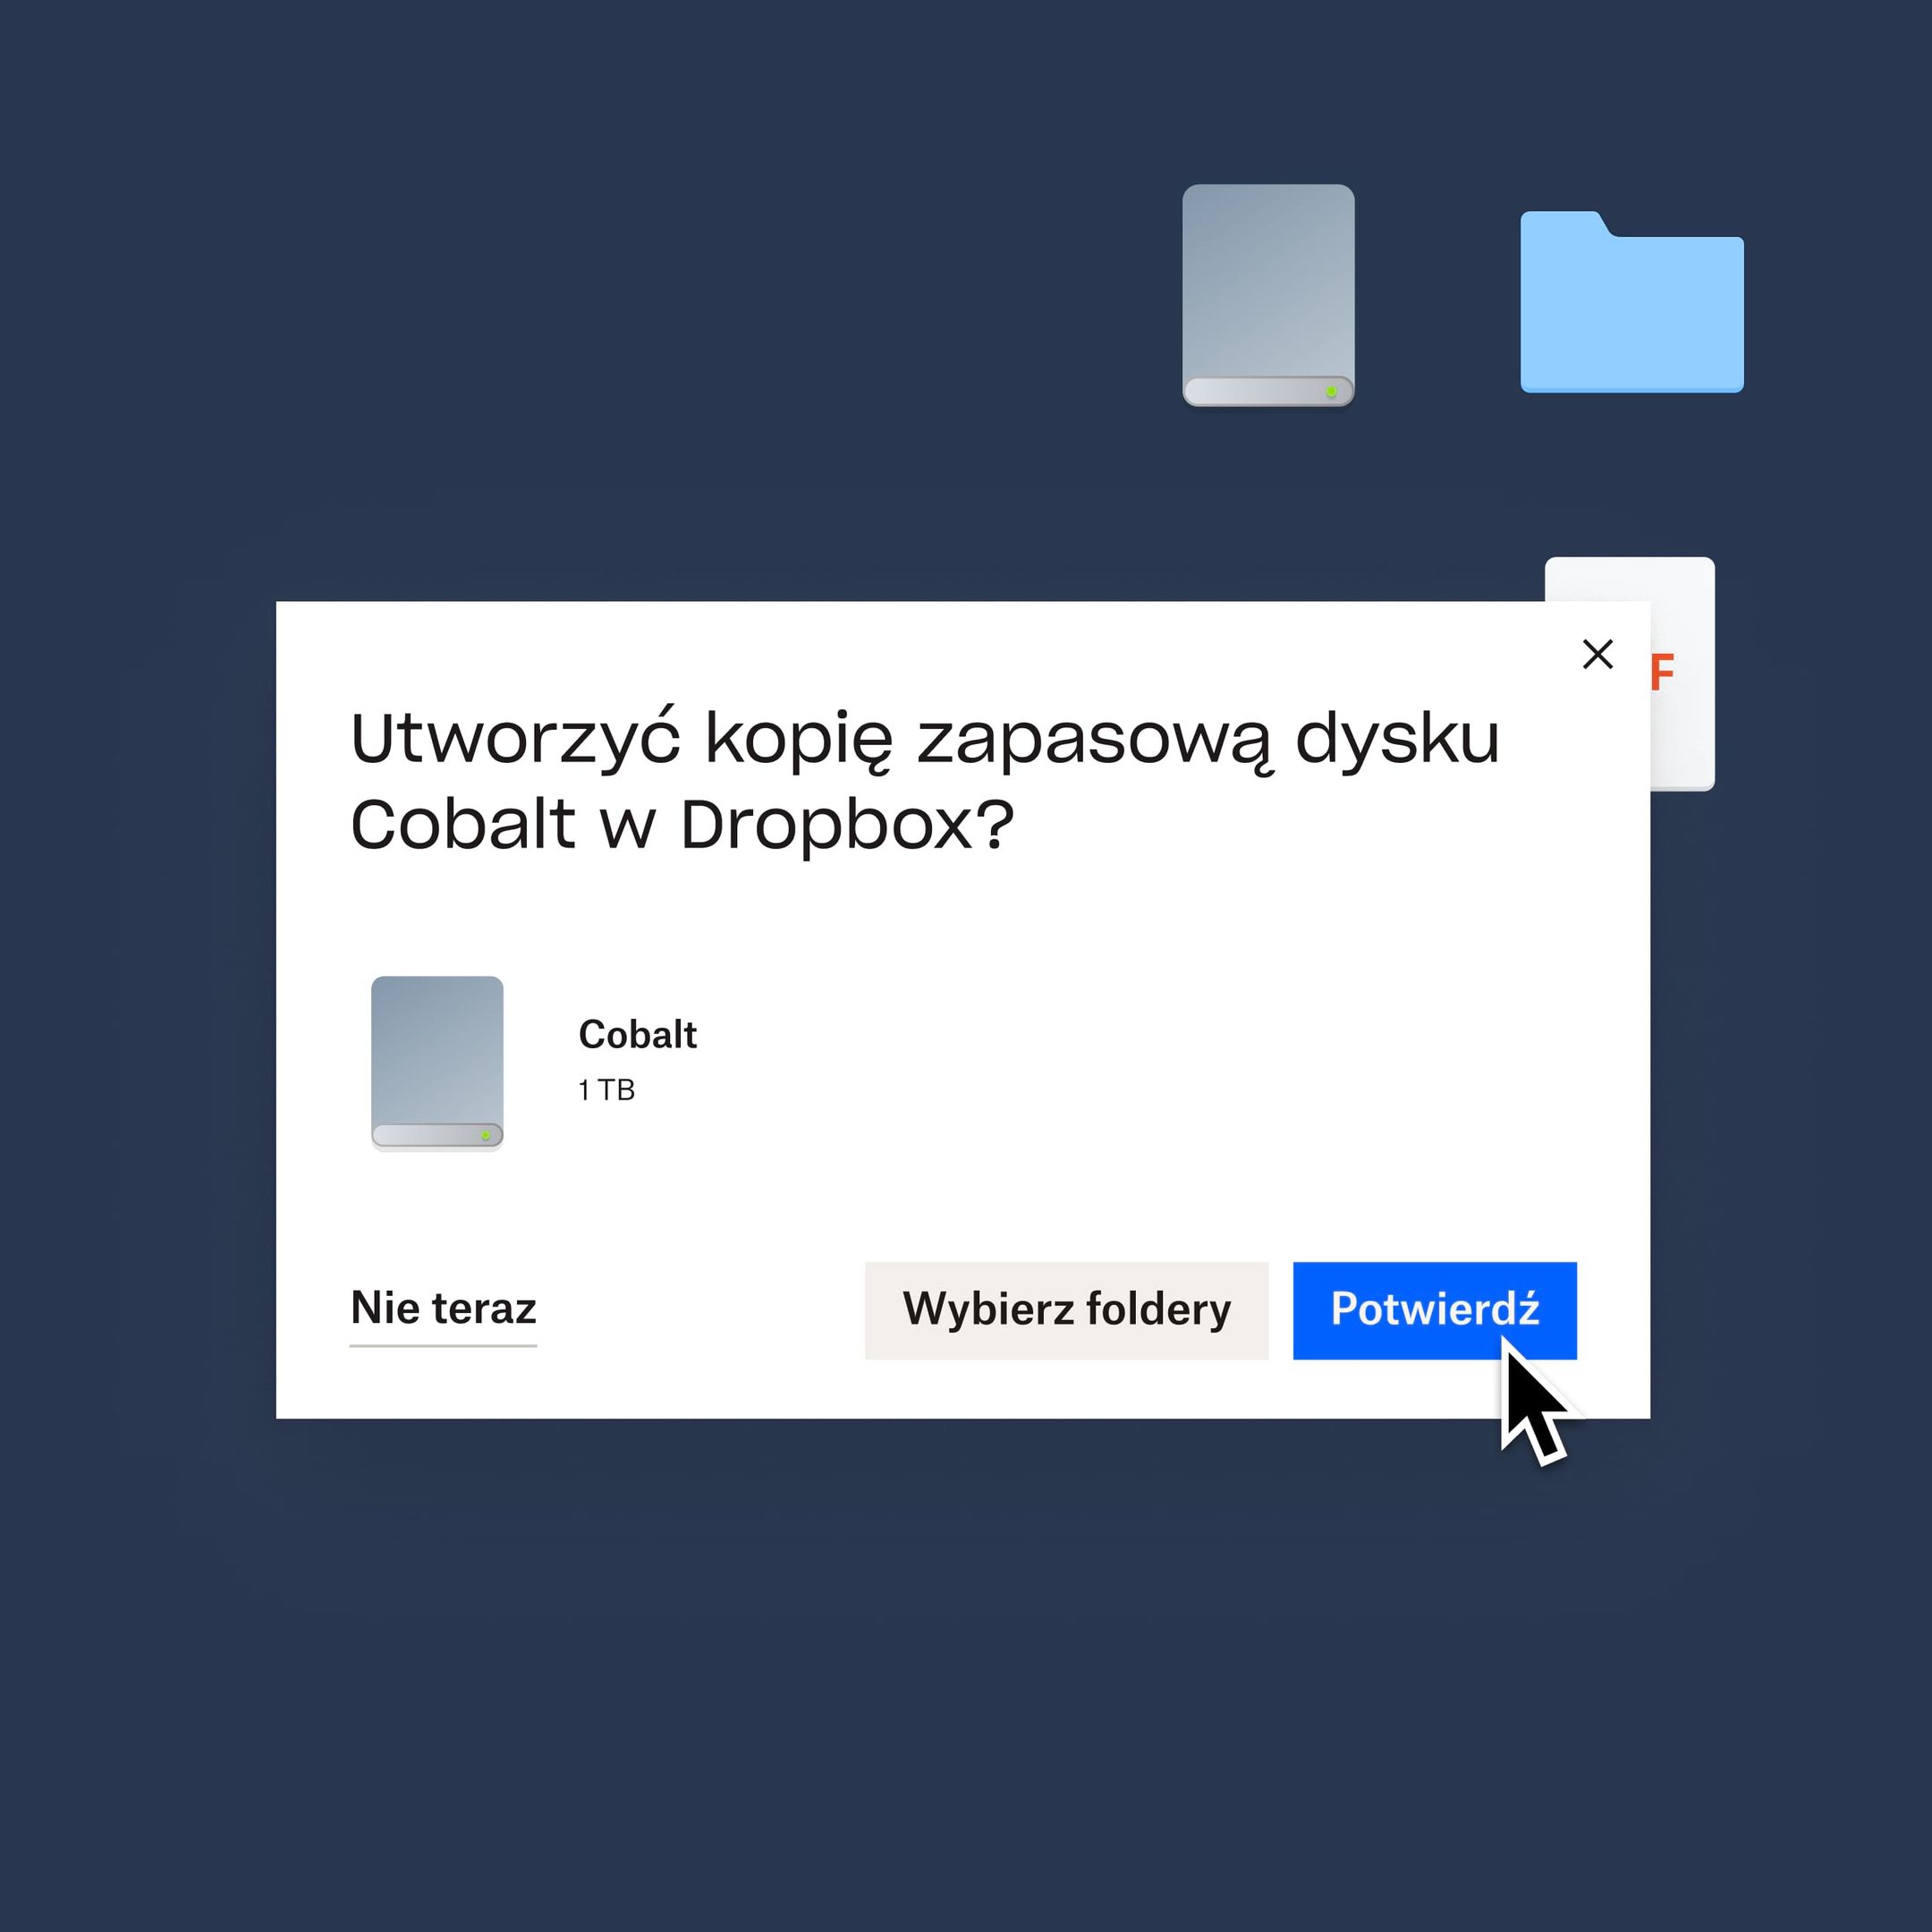 Użytkownik klika niebieski przycisk potwierdzający, że chce utworzyć kopię zapasową dysku Cobalt w Dropbox